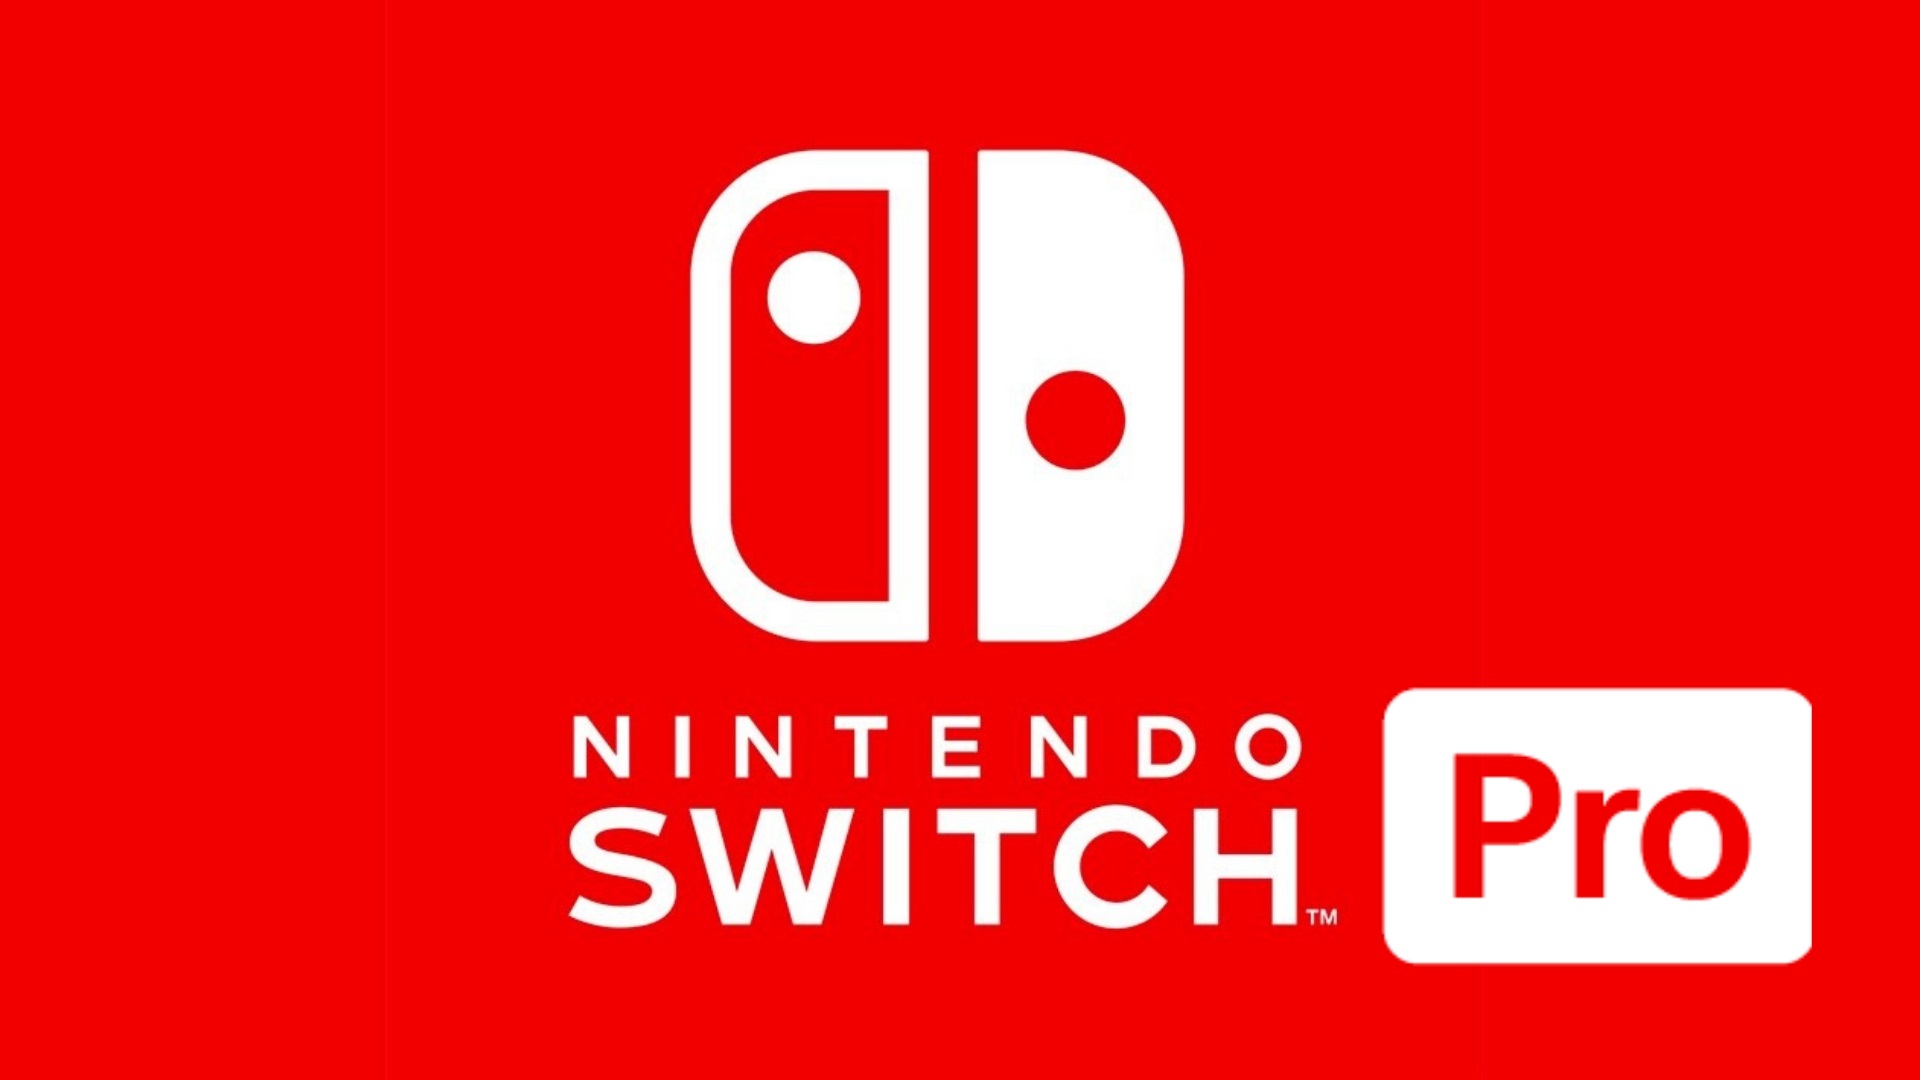 [Edito] Nintendo Switch Lite – Une version Pro serait beaucoup plus logique !